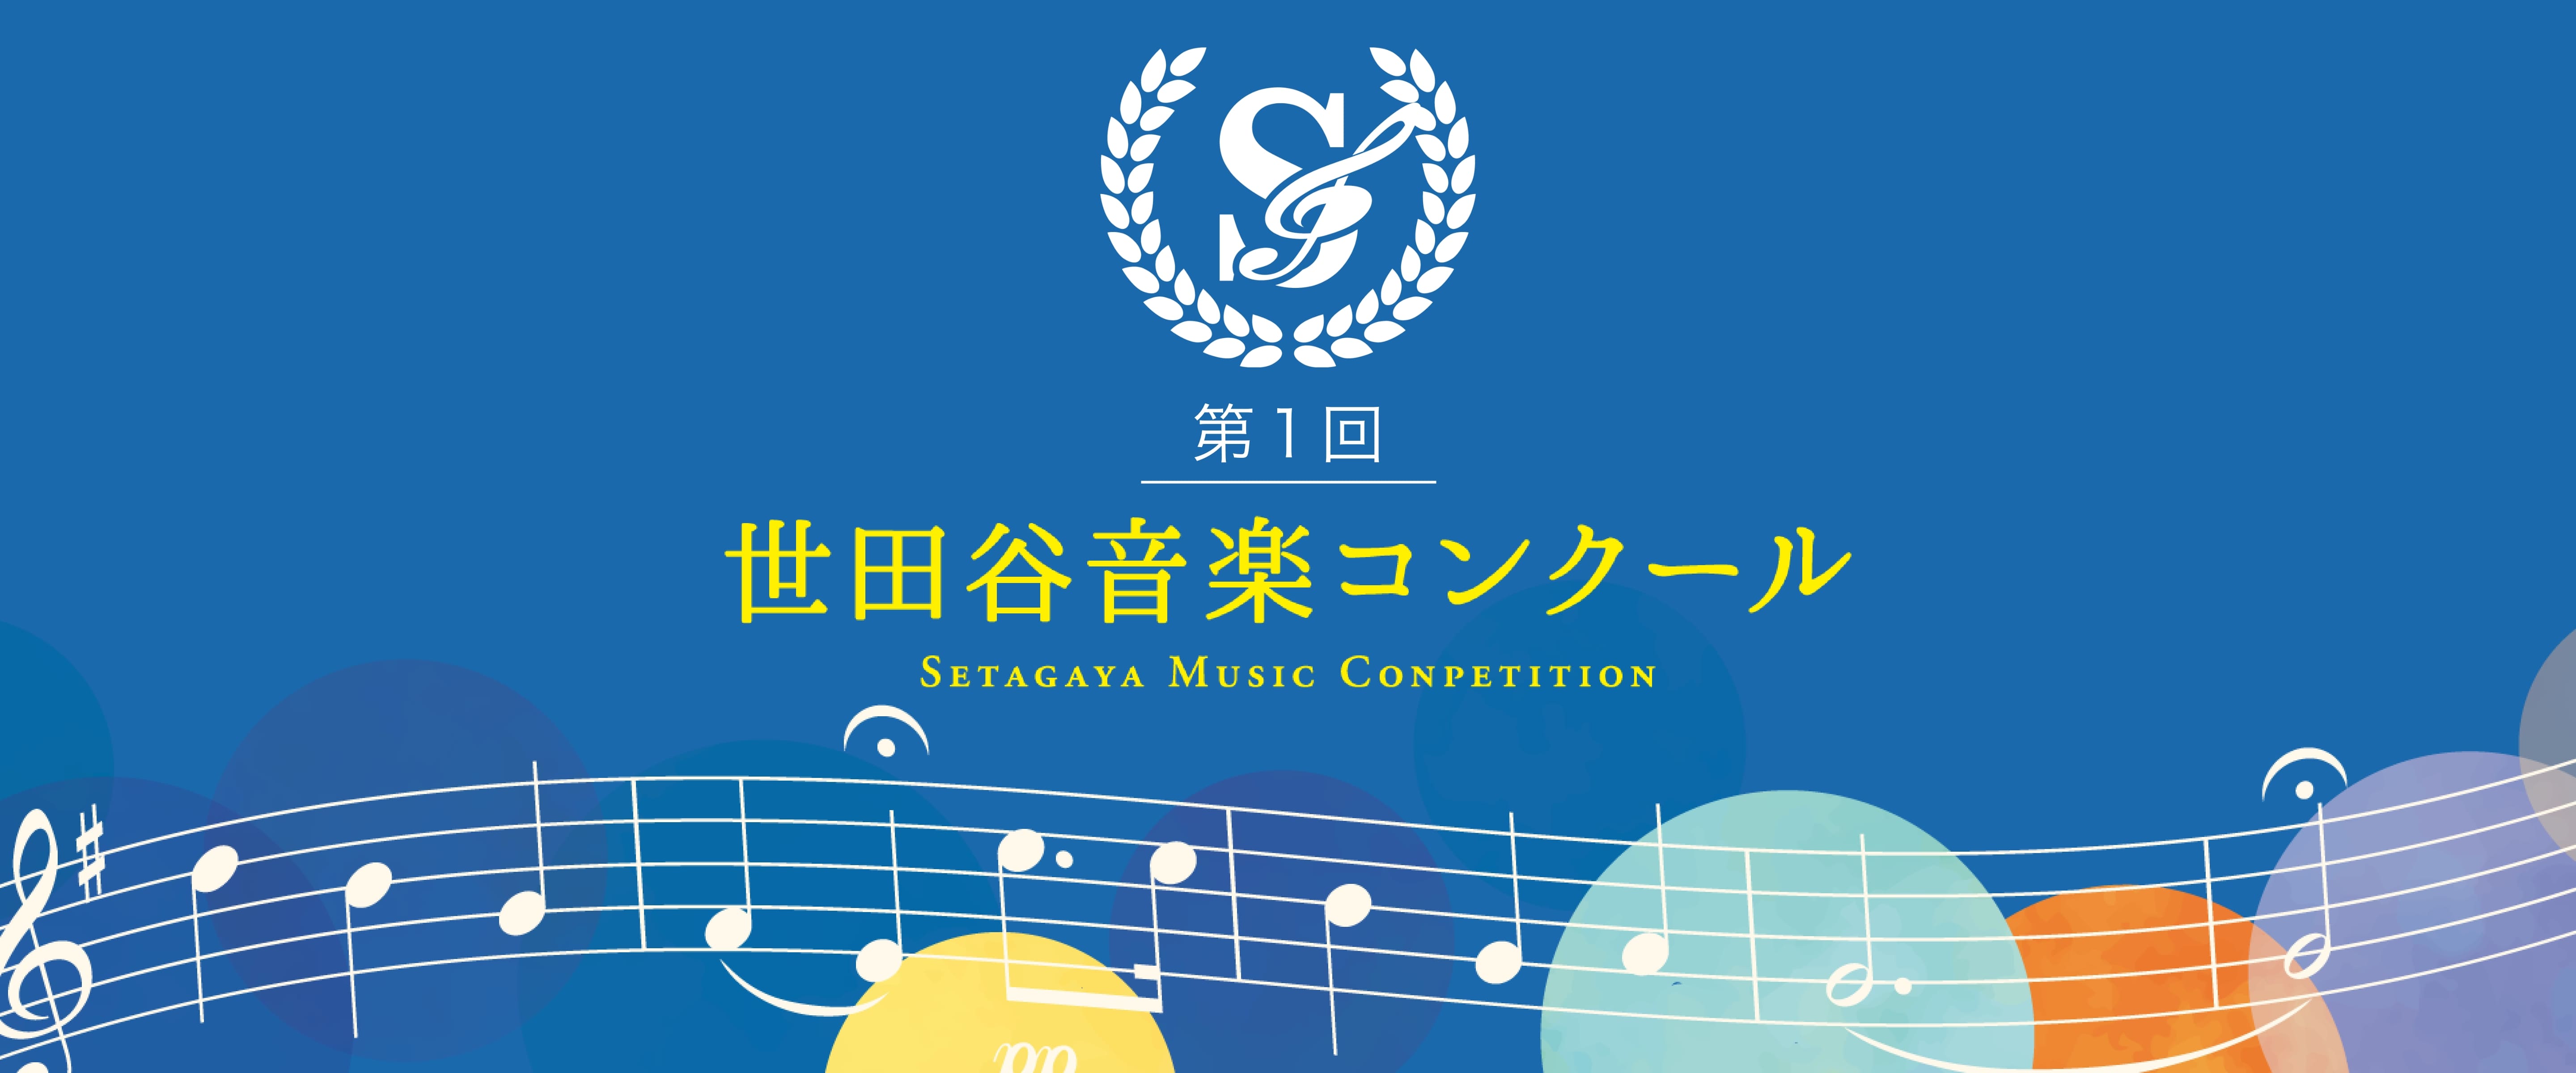 第1回 世田谷音楽コンクール – Setagaya Music Conpetition